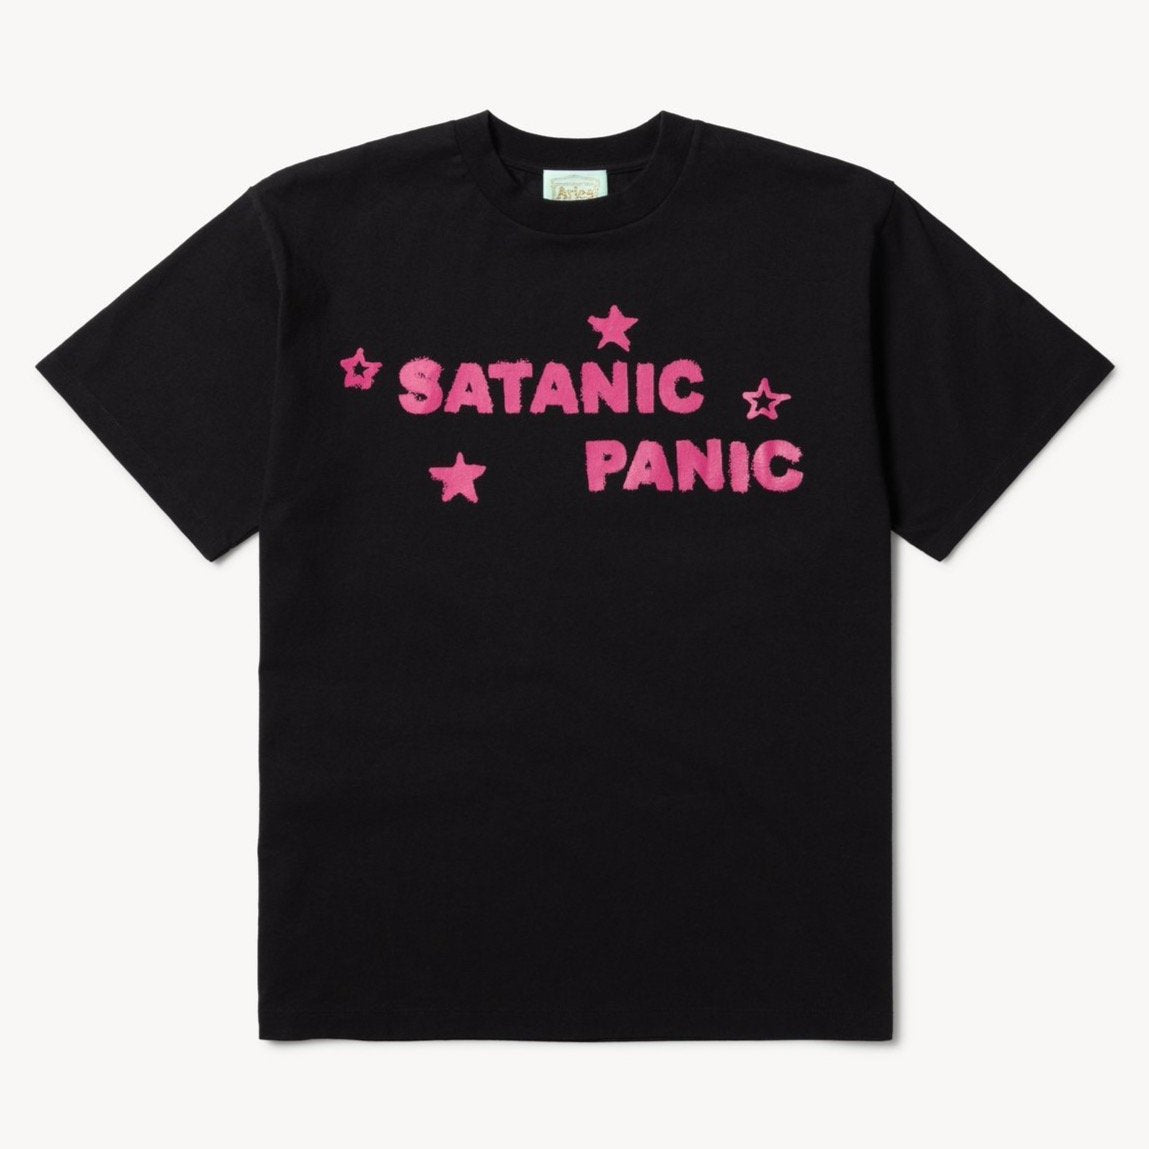 Aries Arise Satanic Panic T-Shirt